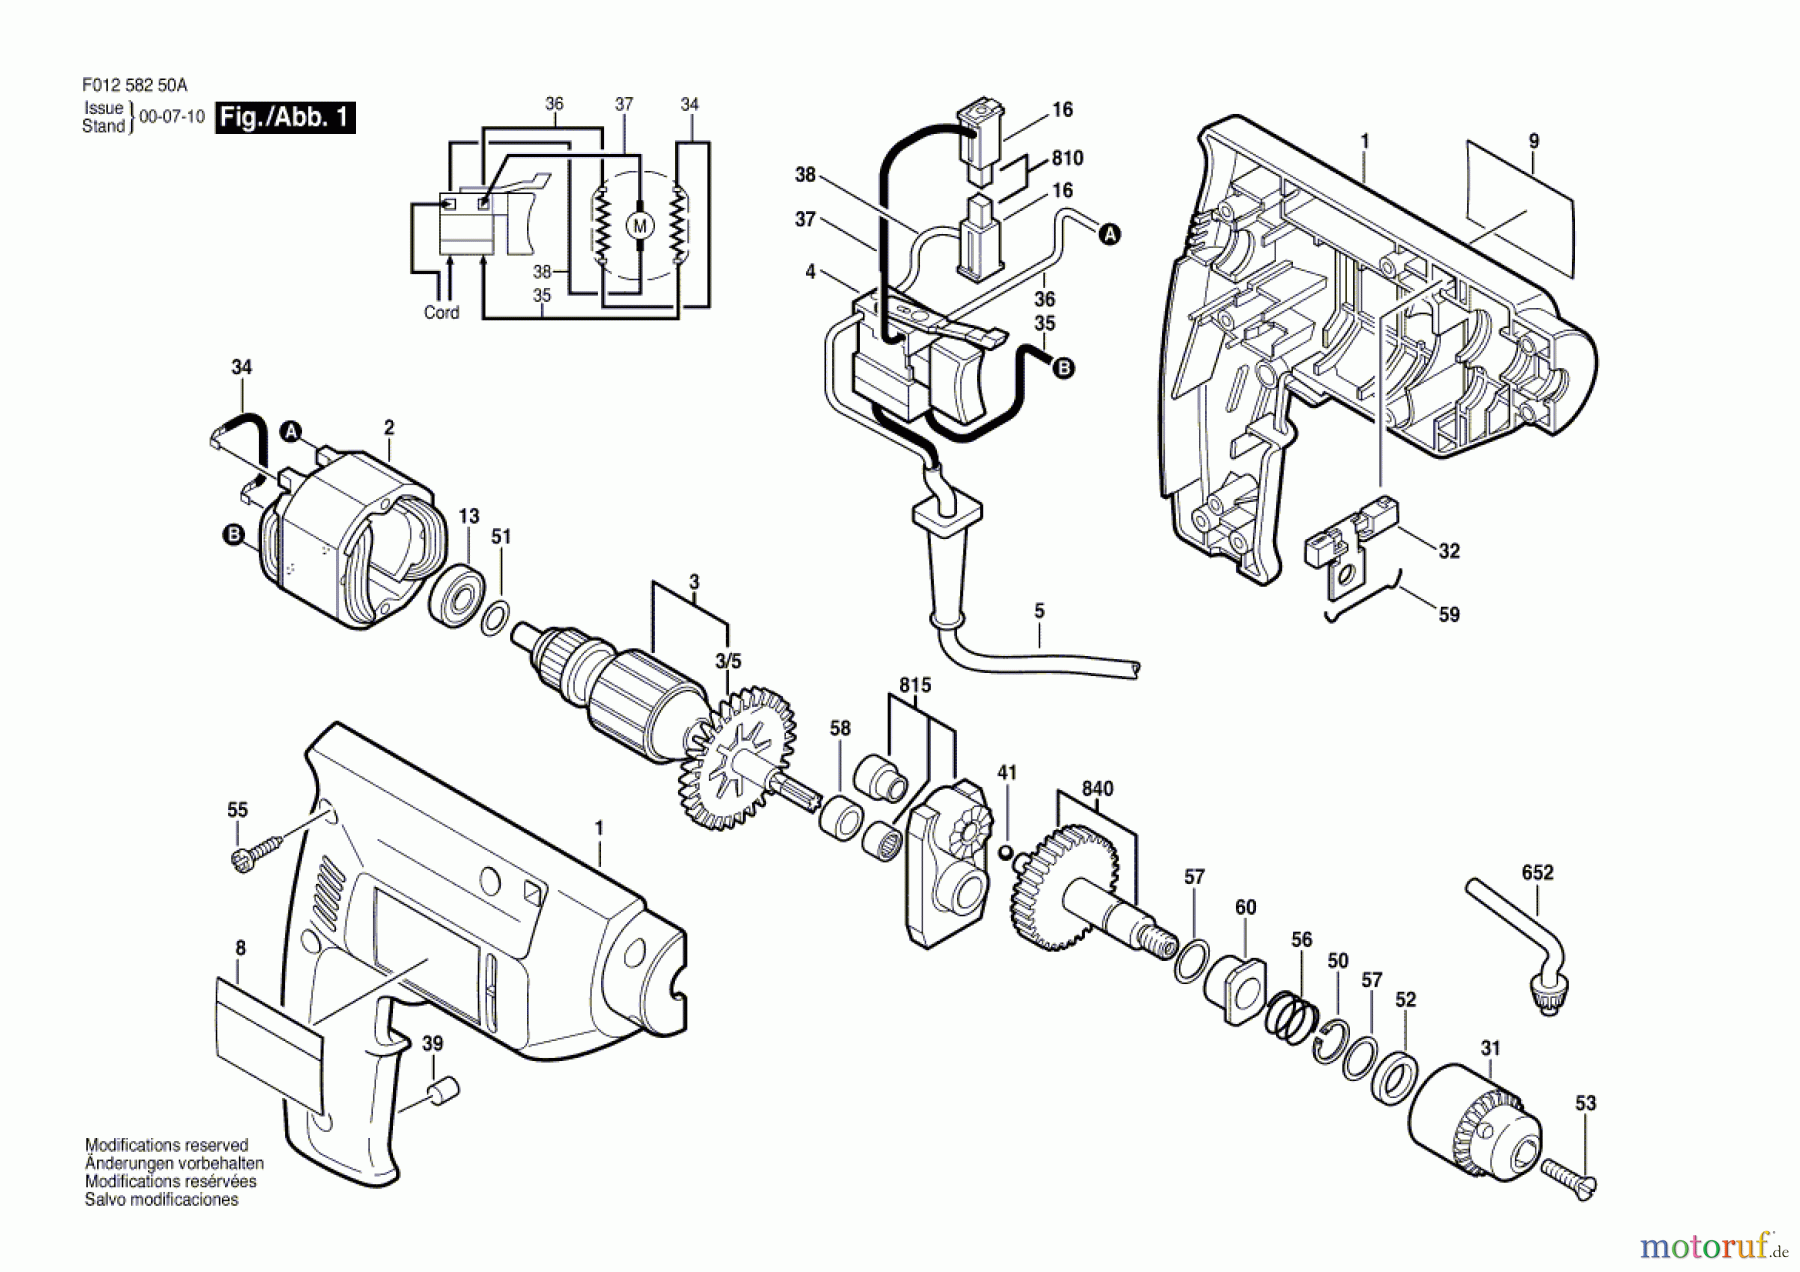  Bosch Werkzeug Bohrmaschine 6425-20 Seite 1